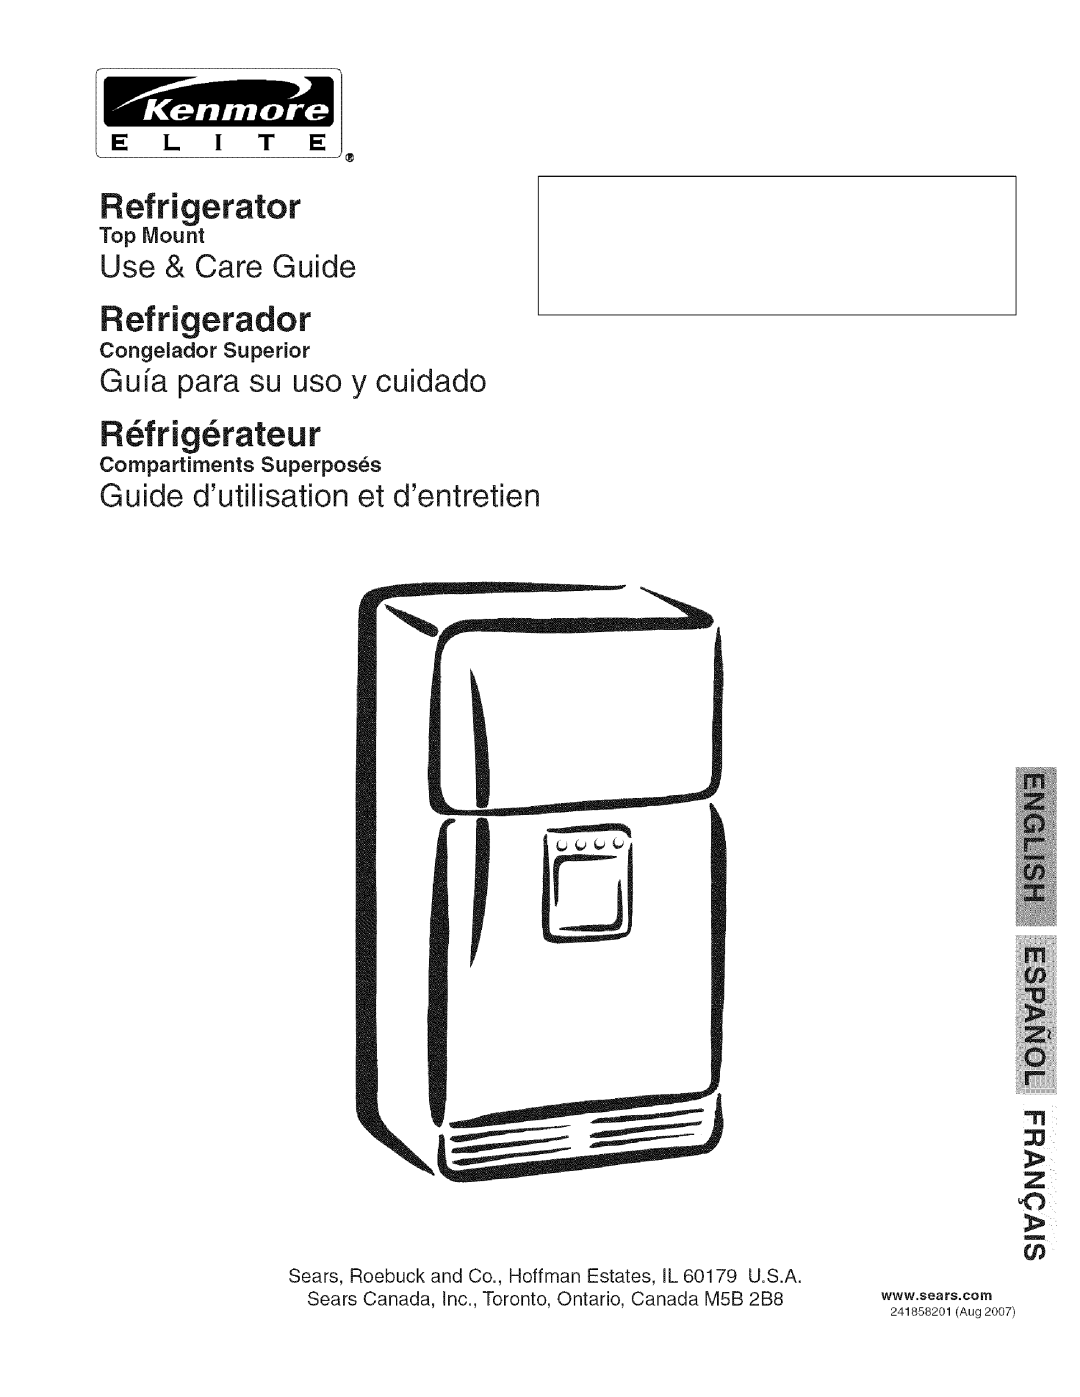 Kenmore 241858201 manual Refrigerador, R frig rateur, Use & Care Guide, Guia para su uso y cuidado, E L I T E 